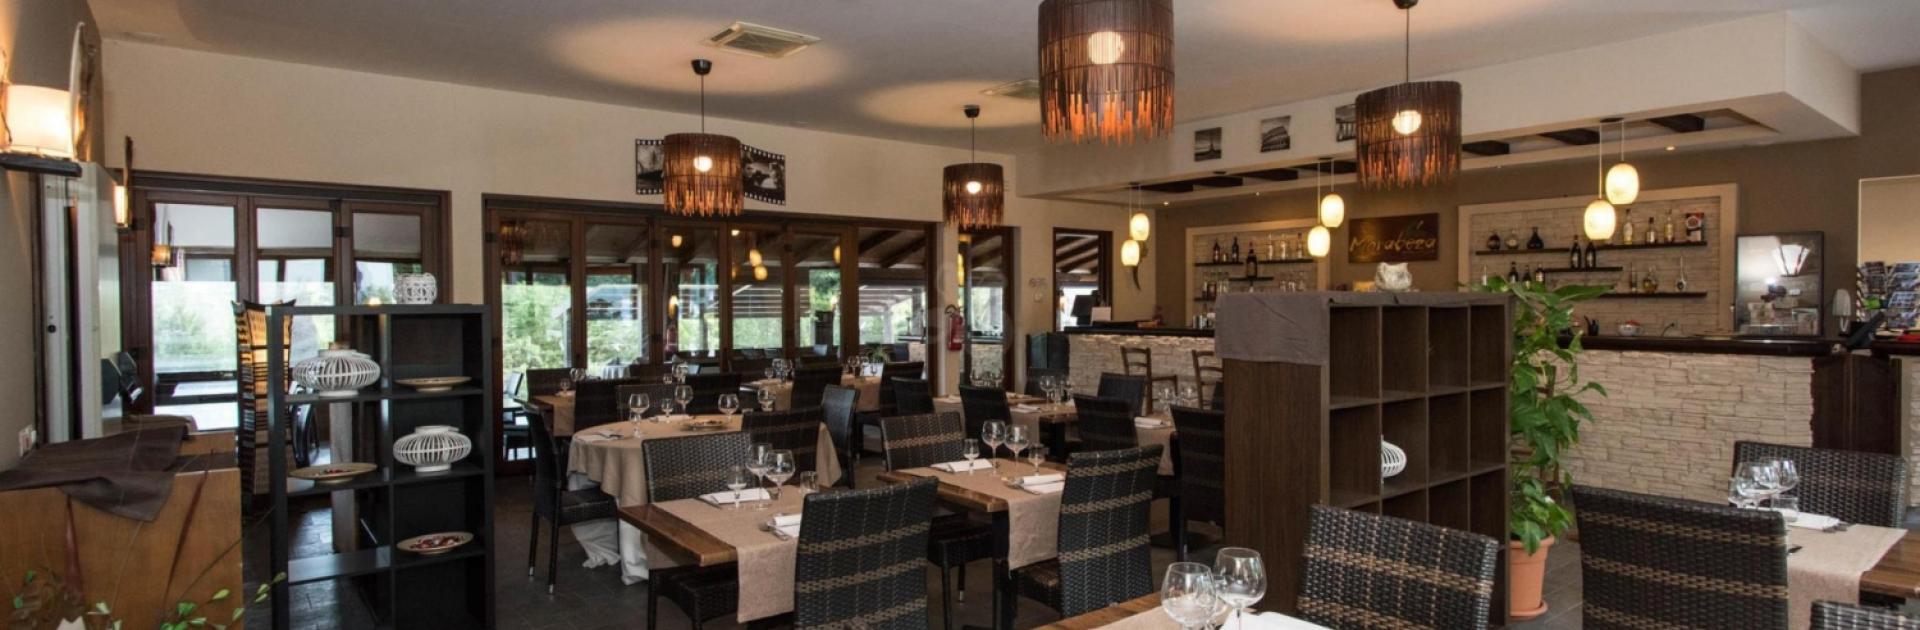 Restaurant moderne avec décoration élégante, mobilier en bois et éclairage d'ambiance.